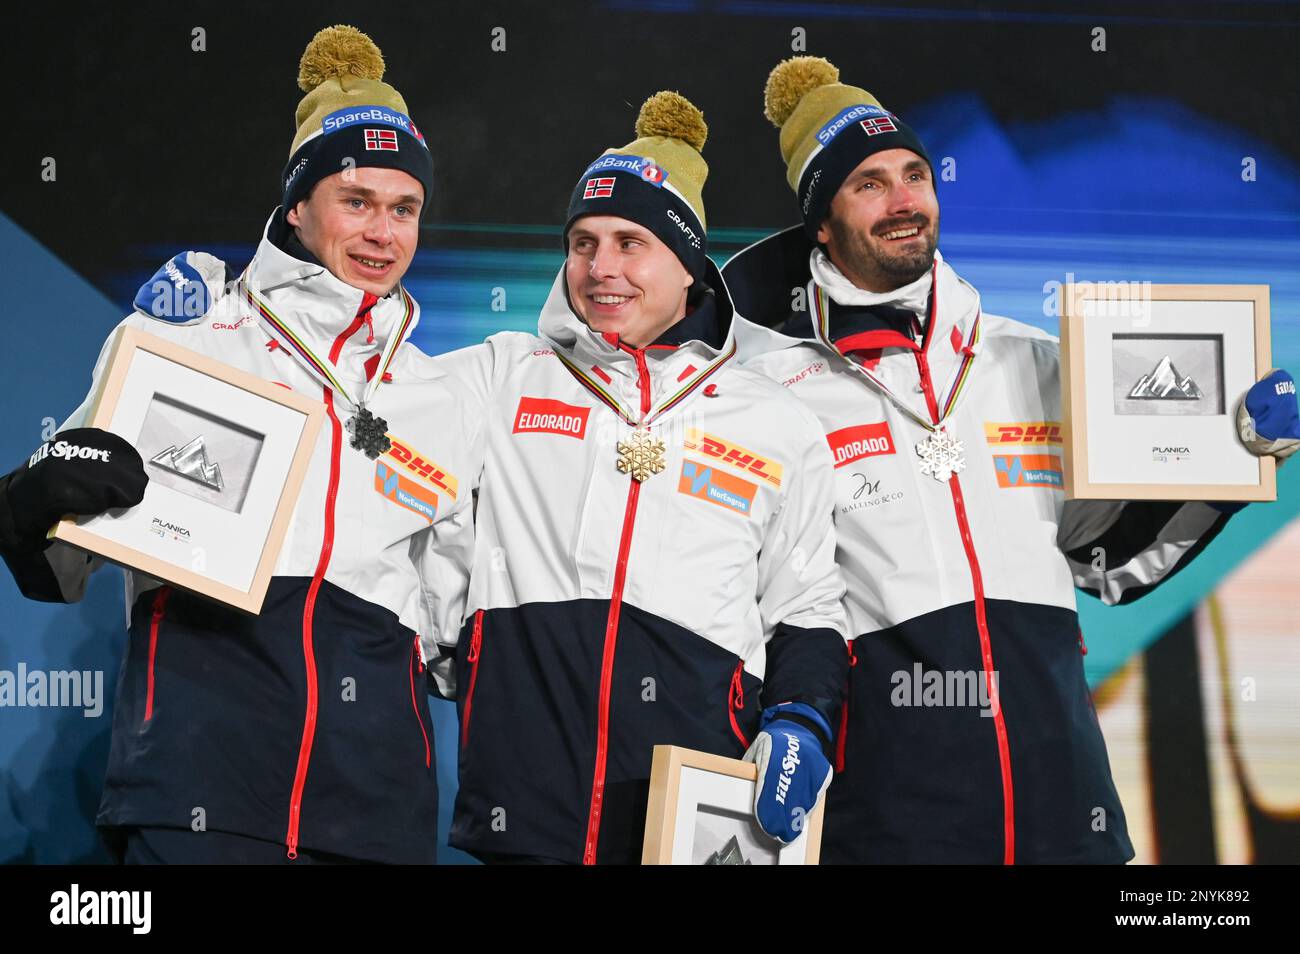 Champions du monde norvégien, course de ski de 15 km, de gauche à droite, Harald Oestberg Amundsen, argent; Simen Hegstad Krueger, Or ; Hans Christer Holund, bronze. Banque D'Images